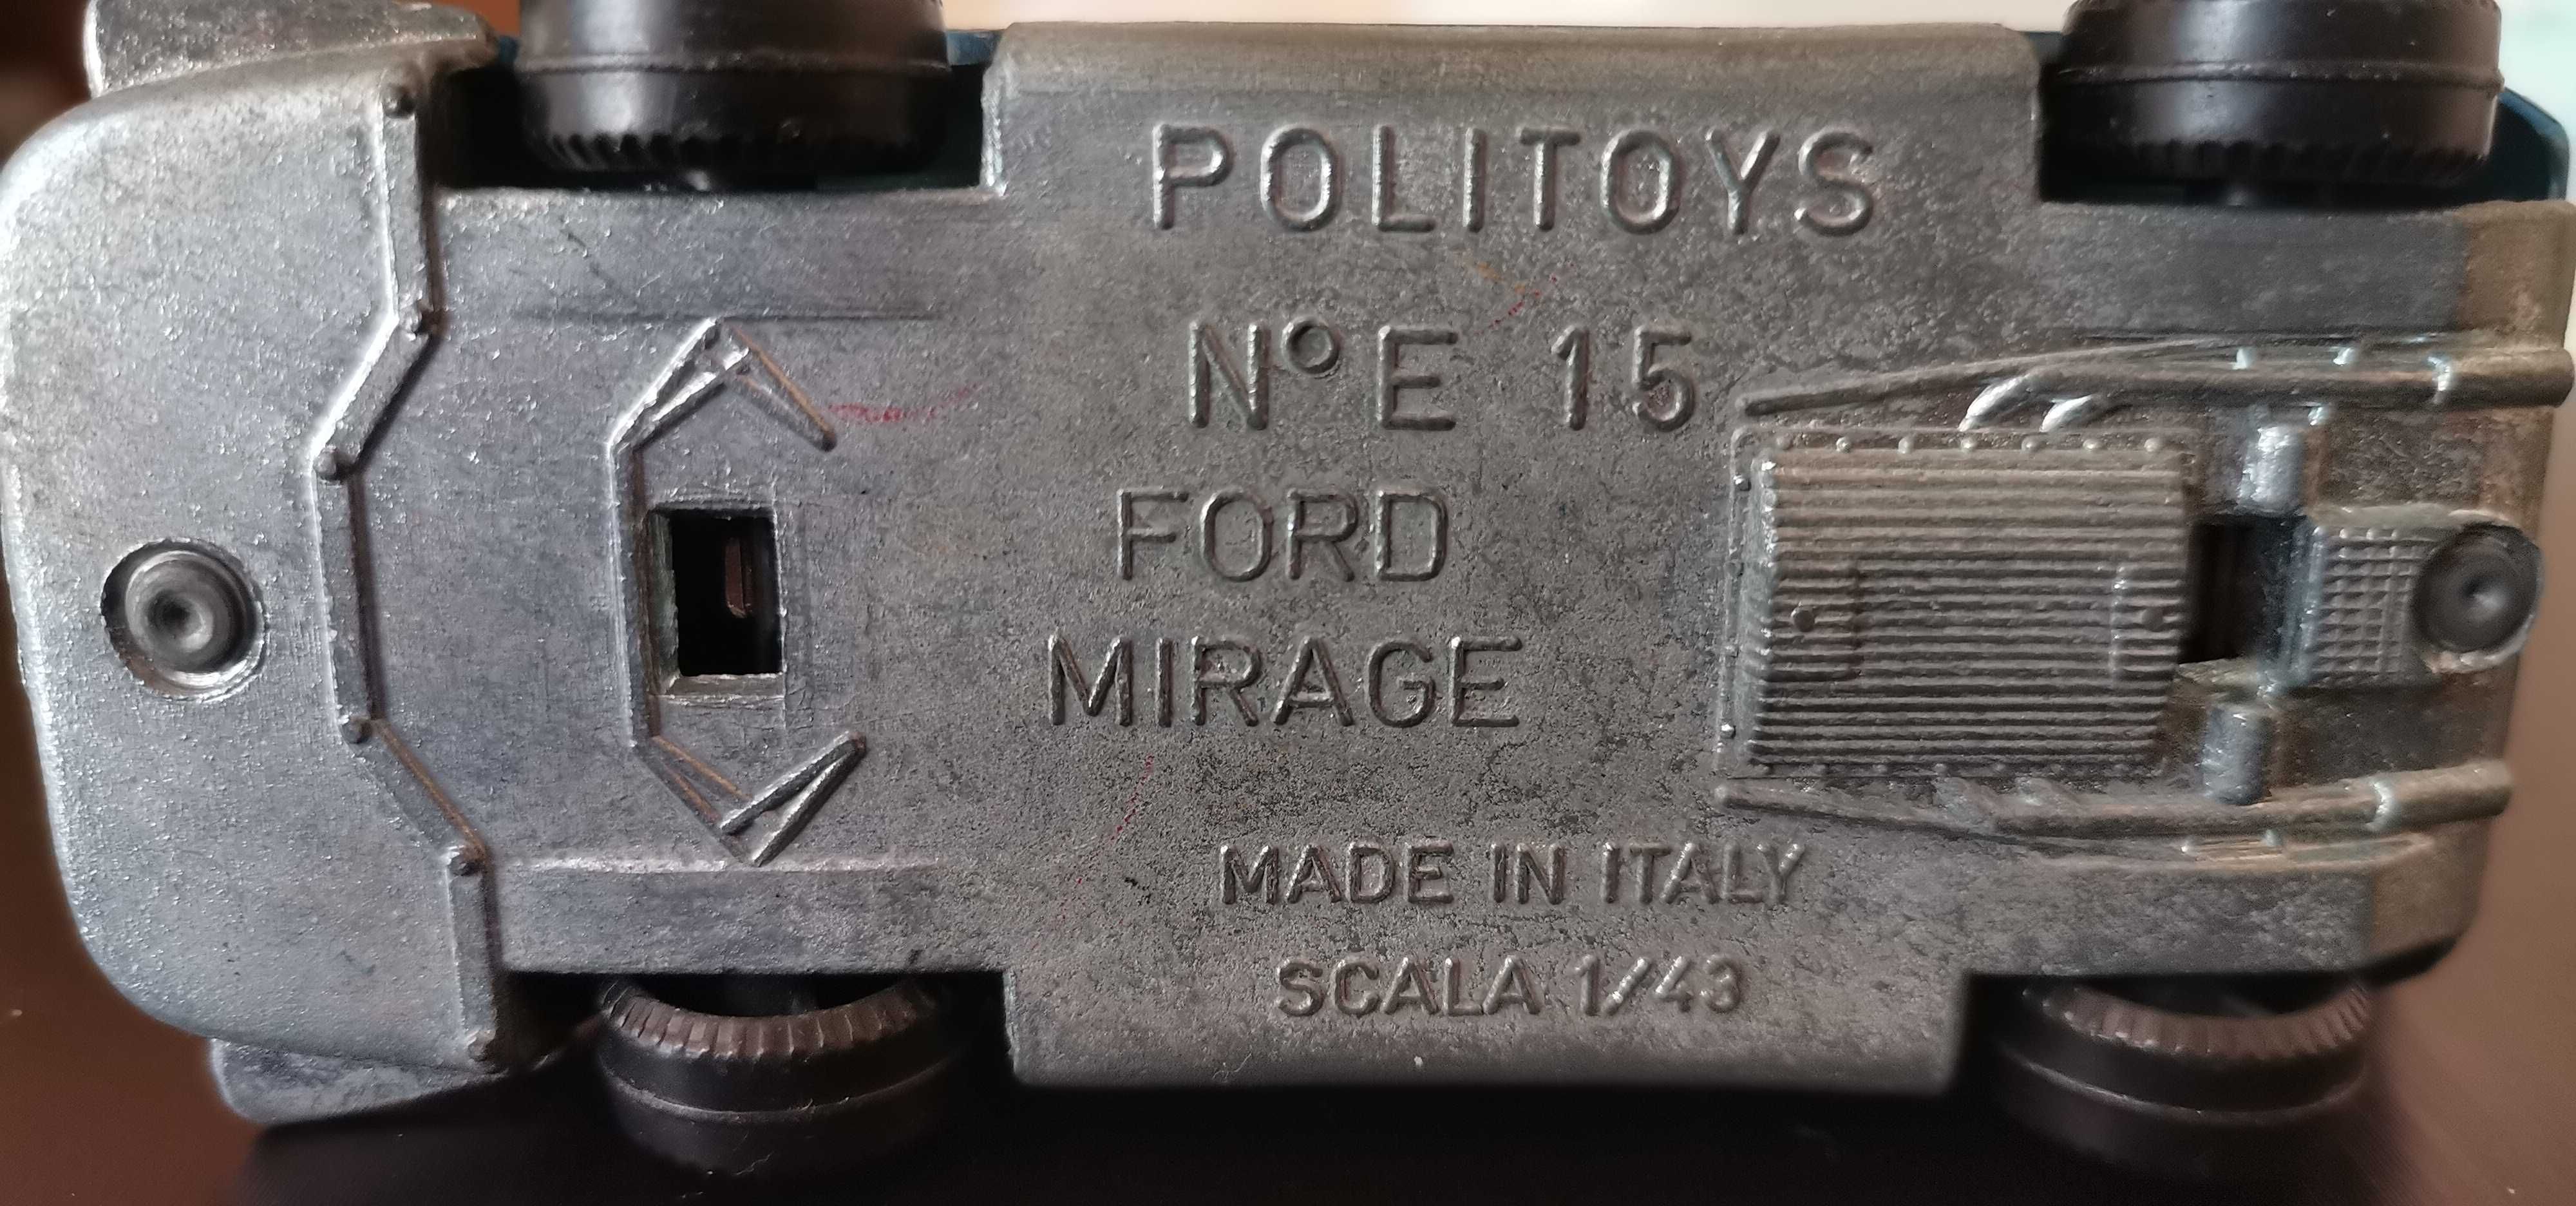 Ford Mirage USA 1/43 Politoys